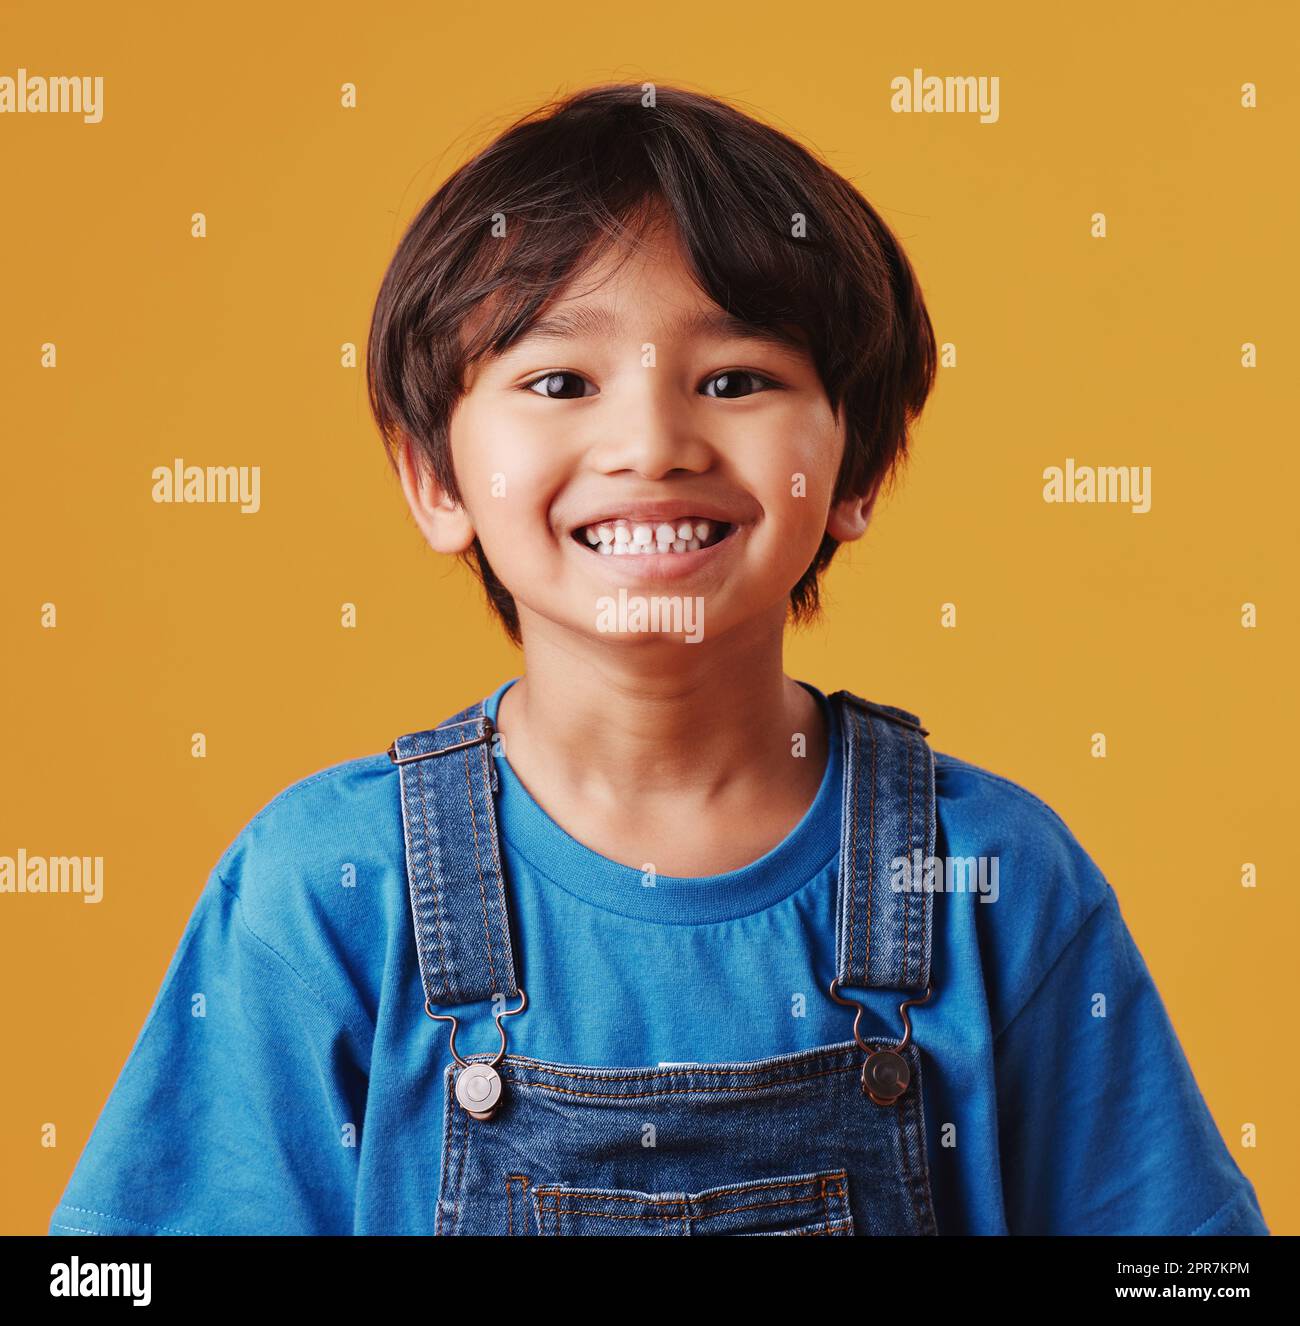 Ritratto di un piccolo ragazzo asiatico carino che indossa abiti casual mentre sorride e sembra eccitato. Bambino in piedi sullo sfondo arancione dello studio. Adorabile bambino felice, sicuro e solo Foto Stock